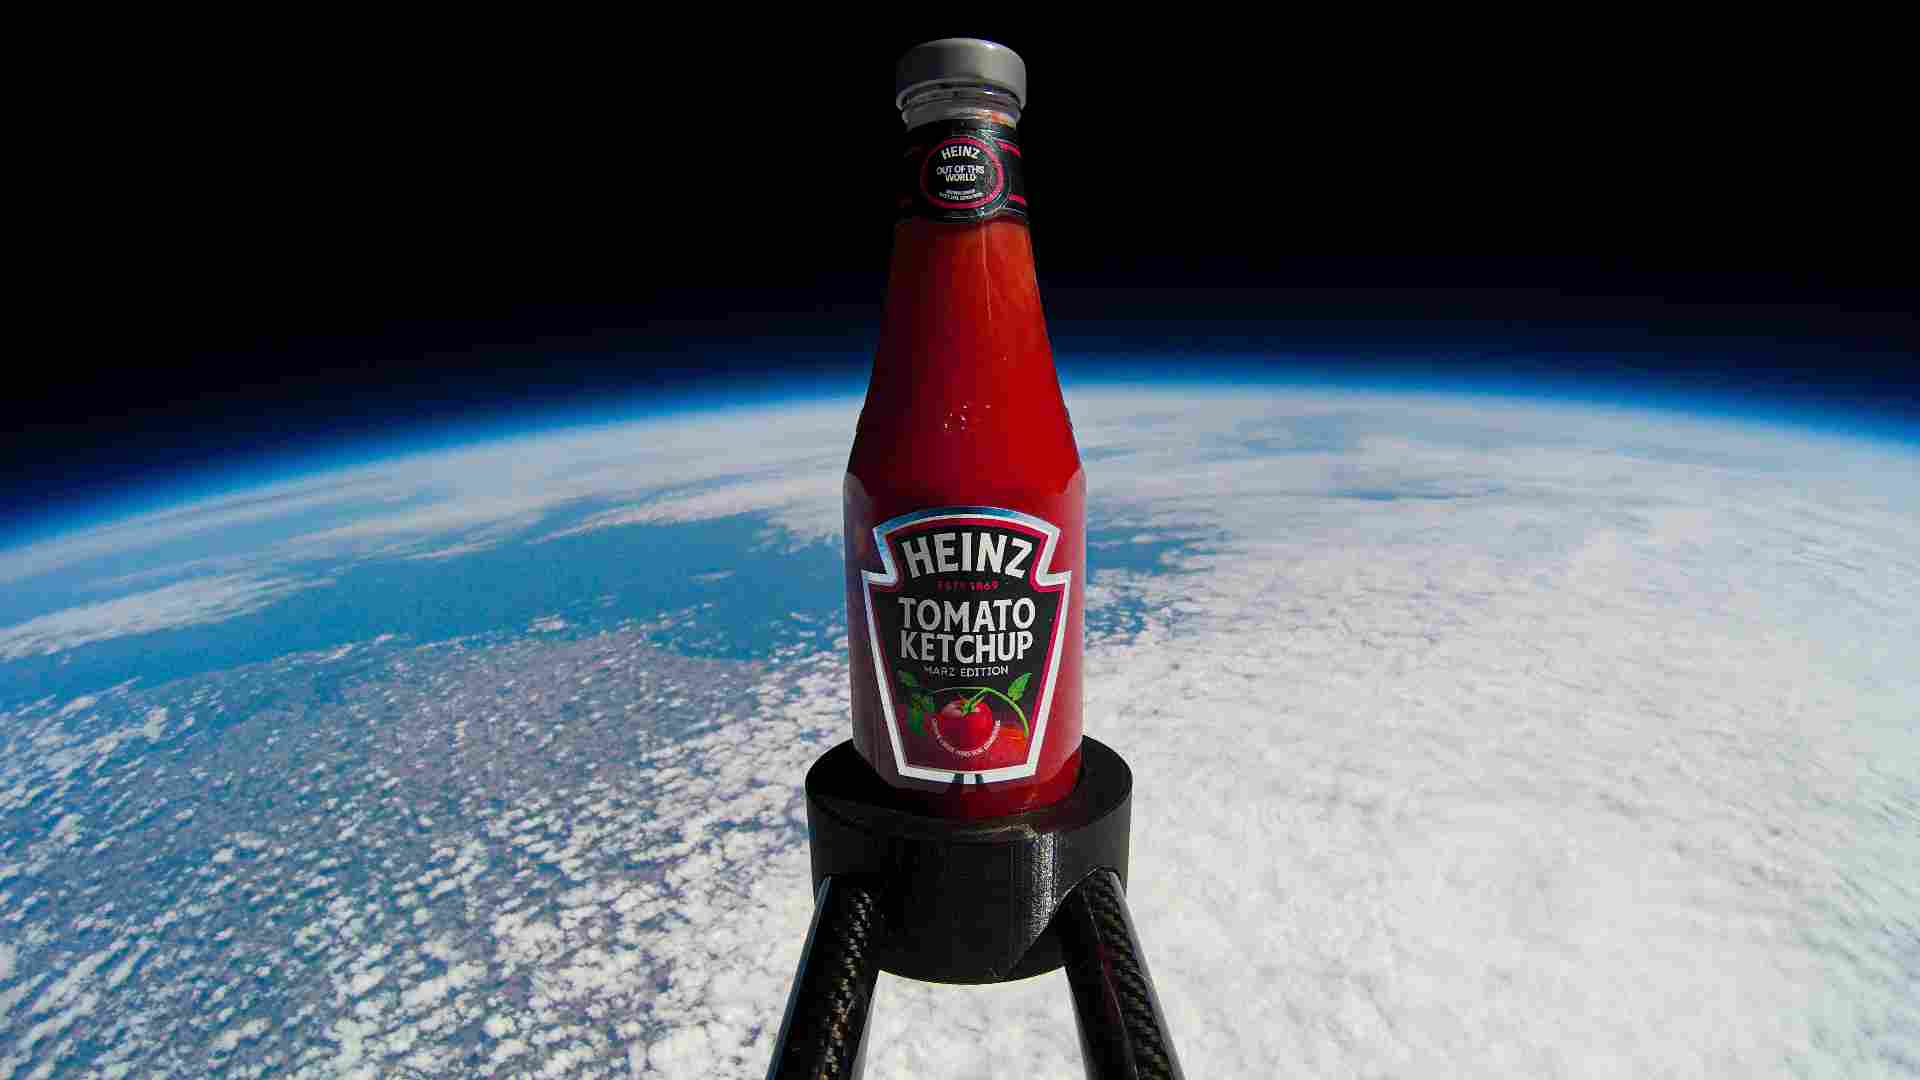 Heinz fabrica ketchup com tomates cultivados em 'solo de Marte '